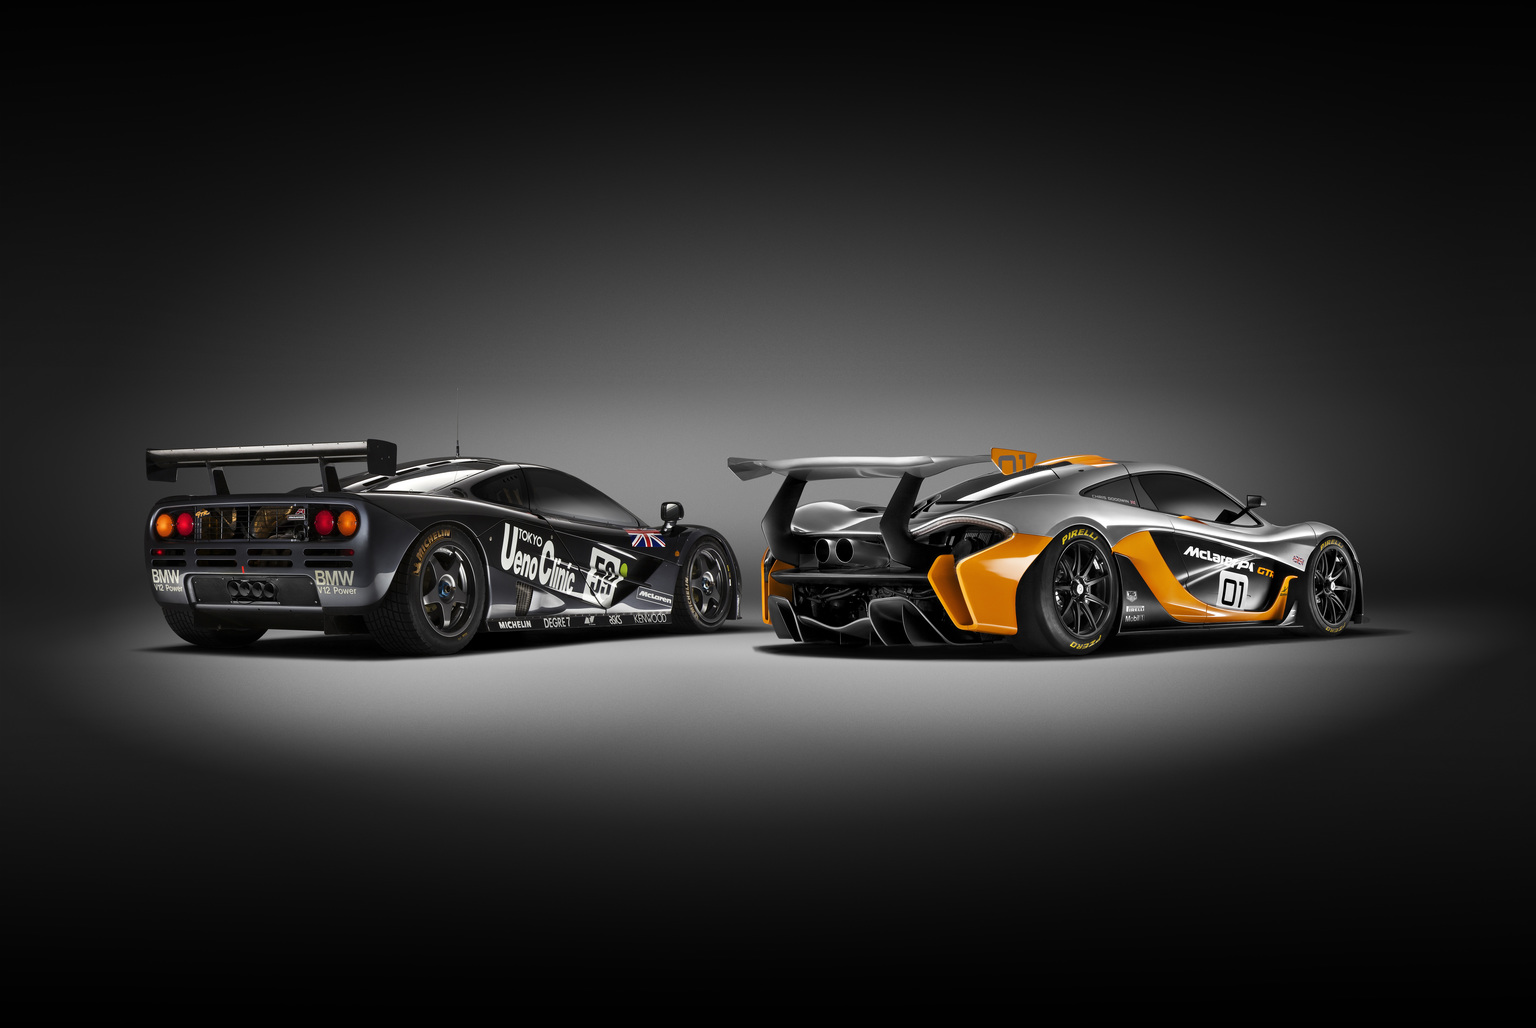 2014 McLaren P1 GTR design concept